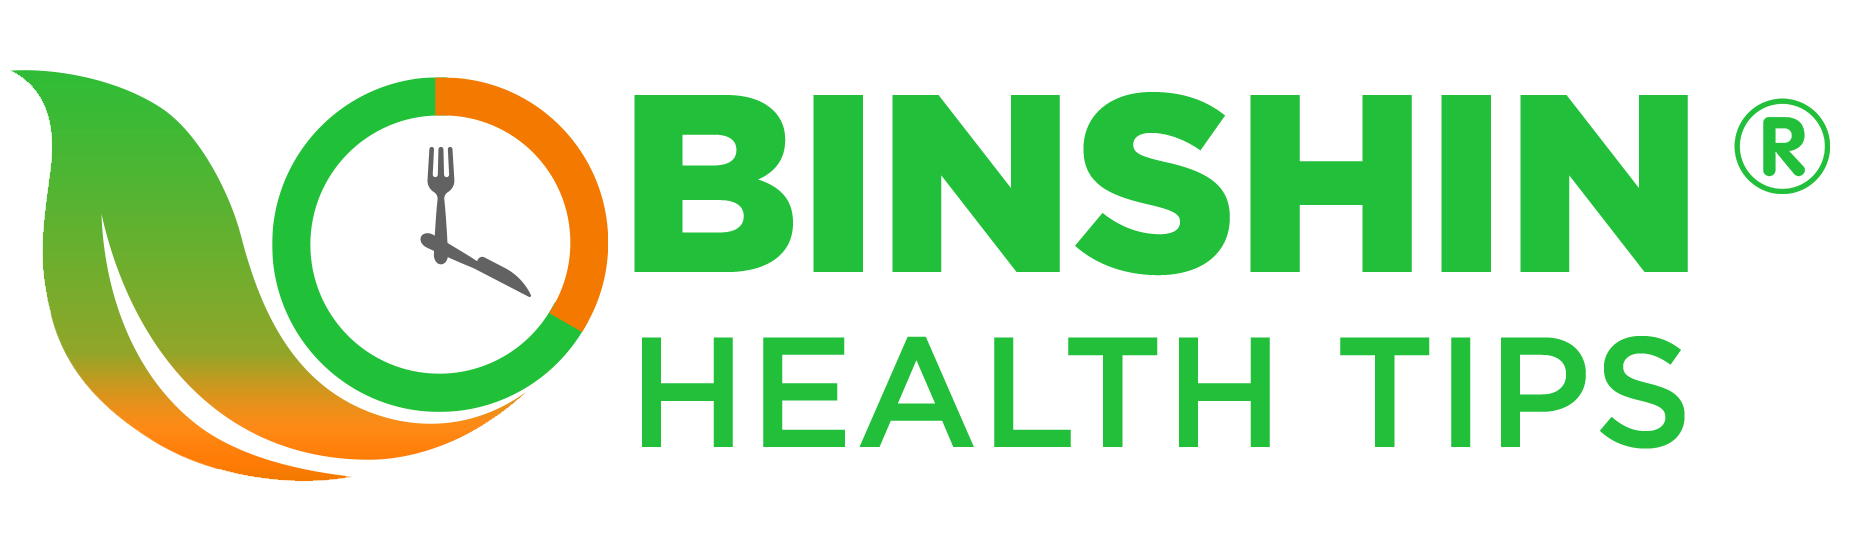 Binshin Healthtips